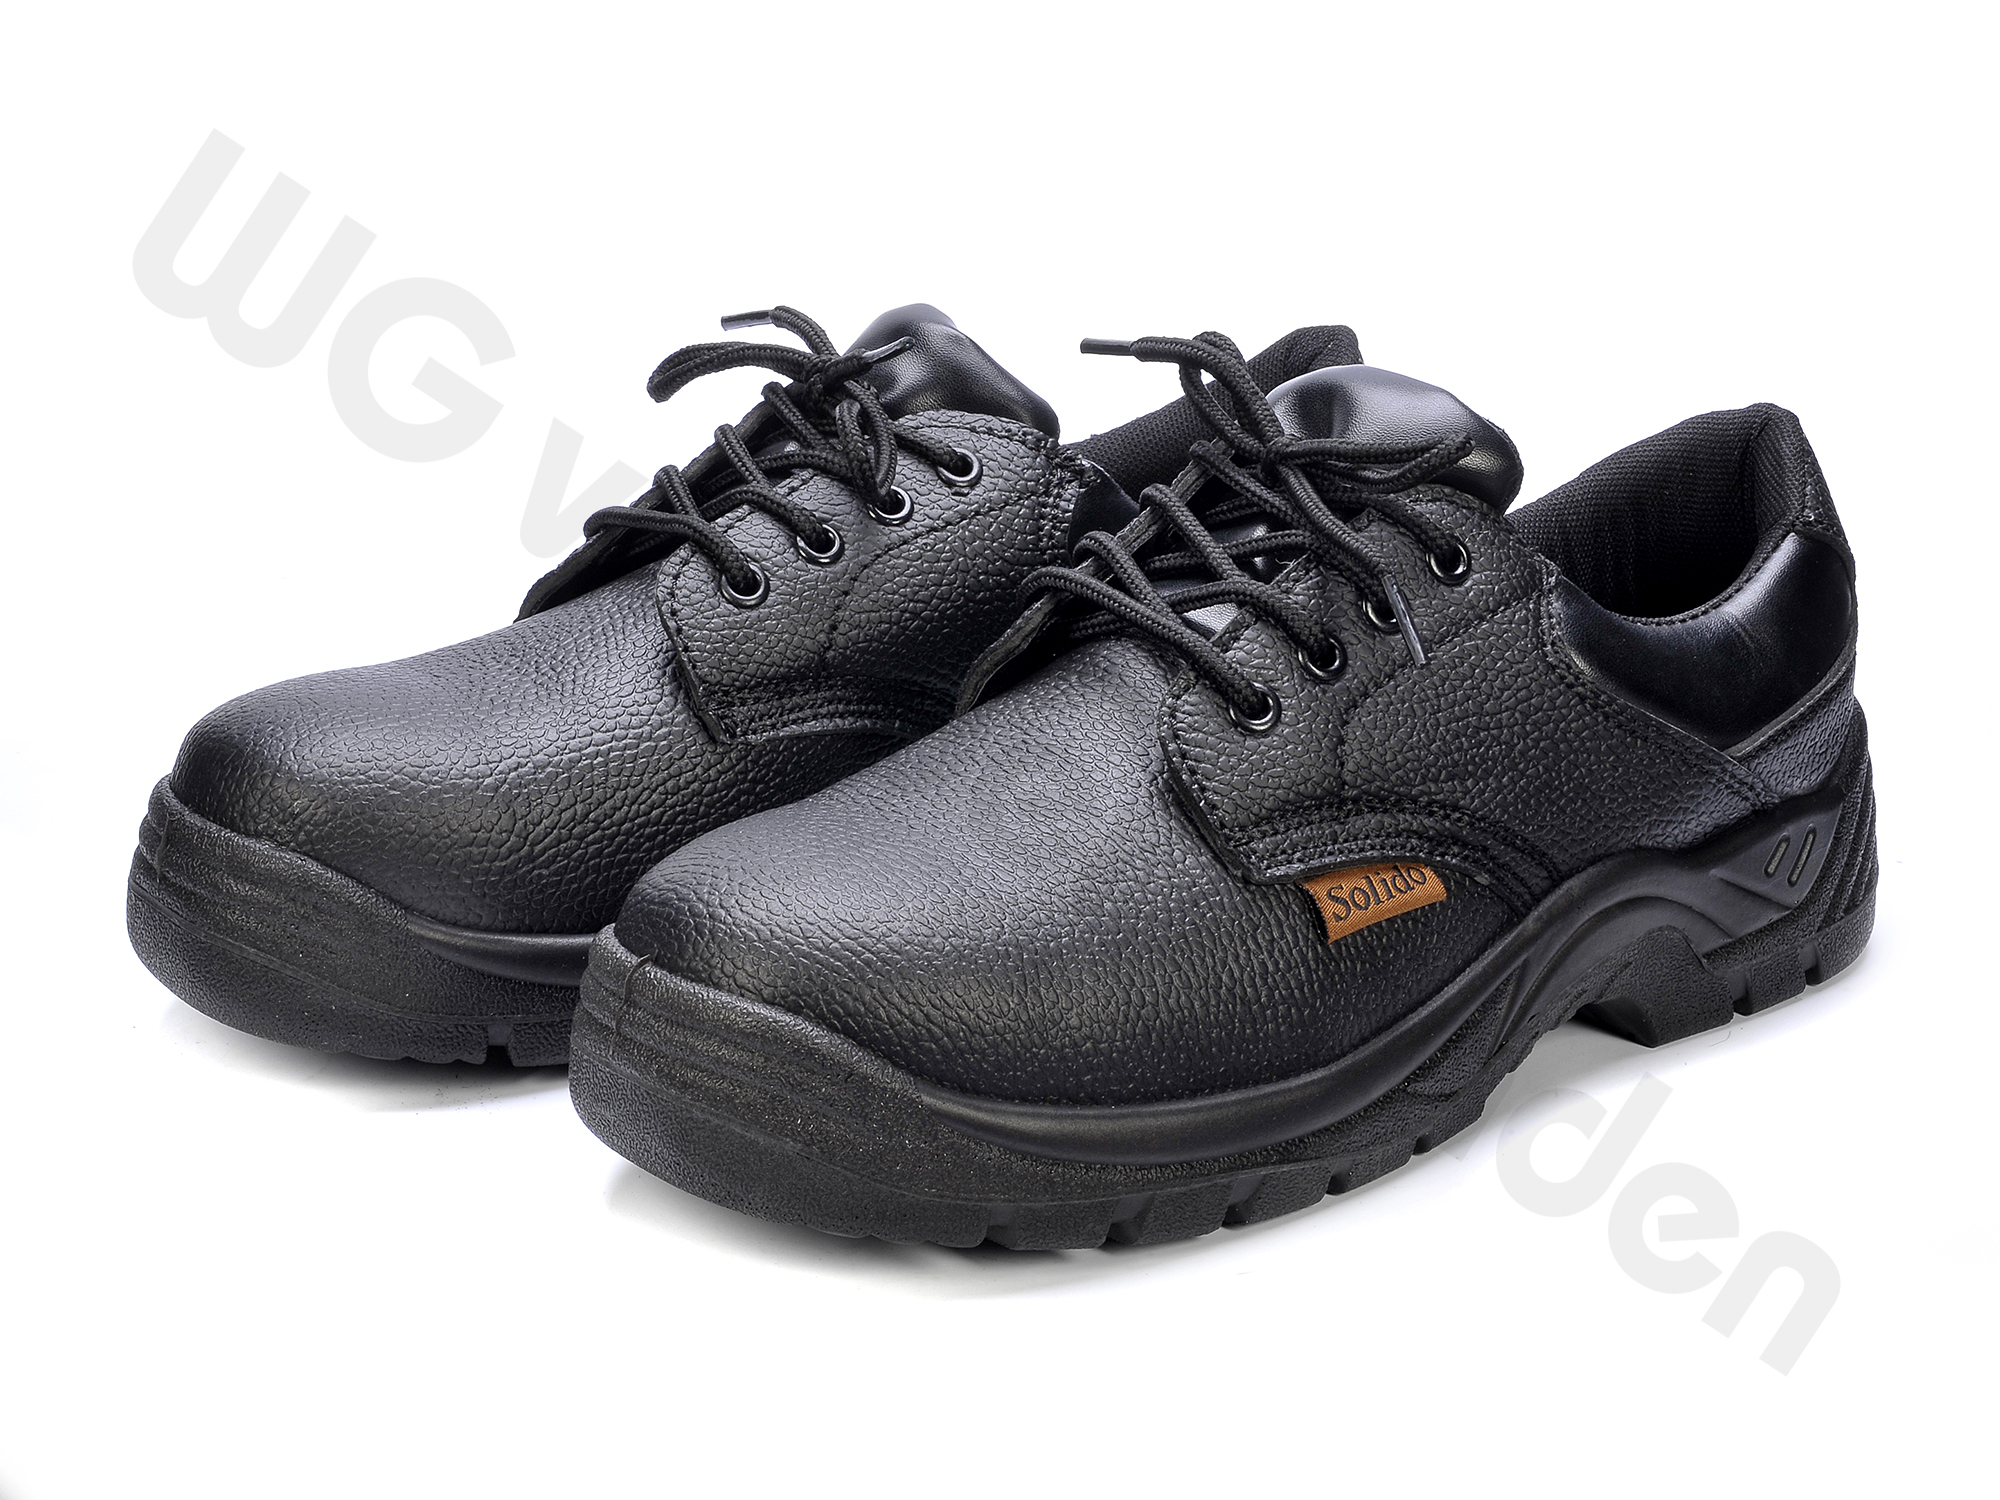 Werkschoenen - Schoenen - Werkkleding - Producten | W.G van Zanden Webshop